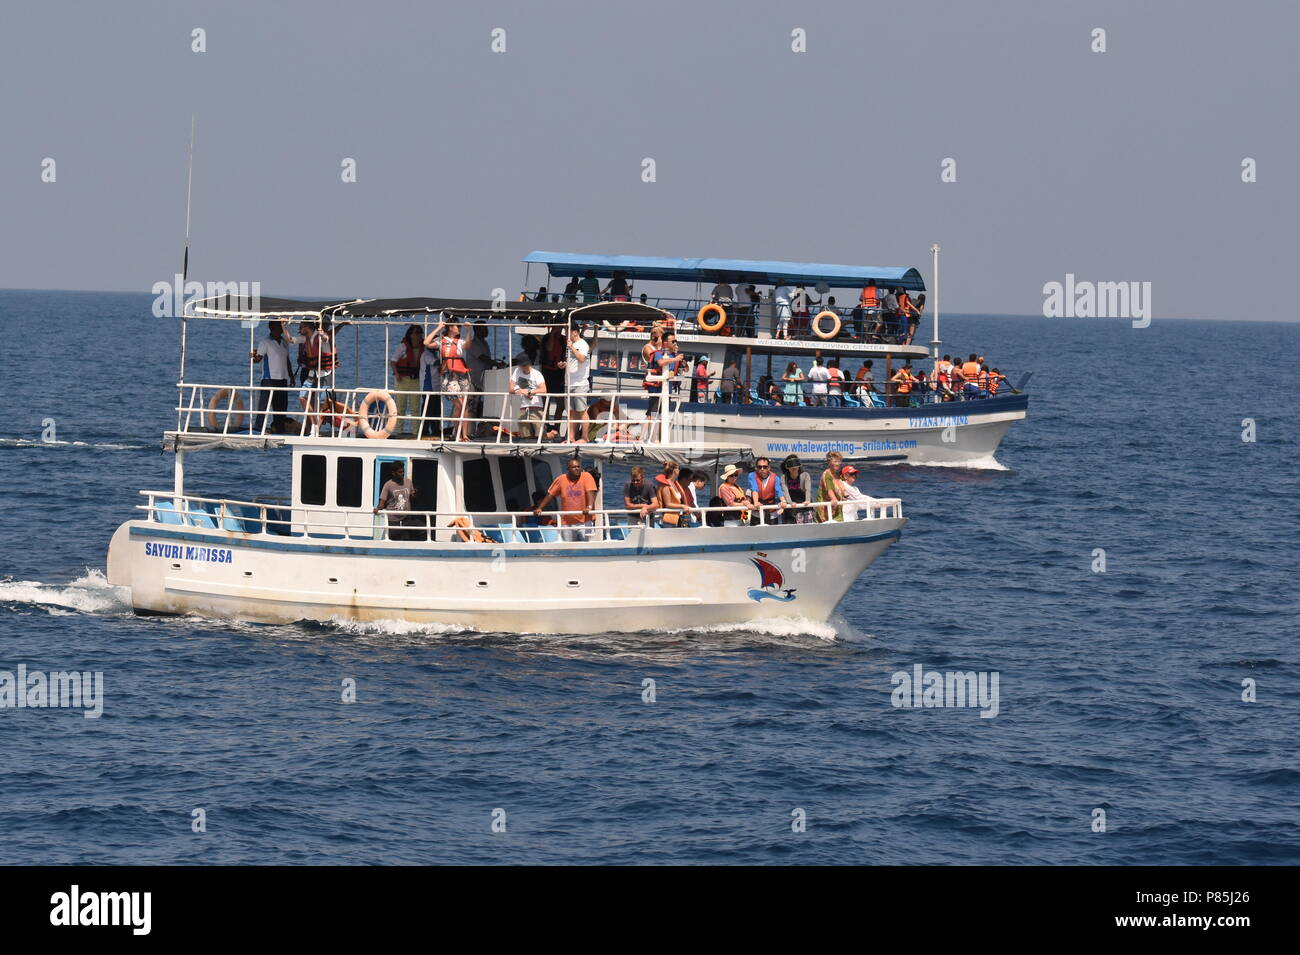 Walviskijkers uit de kust van Sri Lanka ; les observateurs de baleines à bord d'un navire au large de la côte du Sri Lanka Banque D'Images